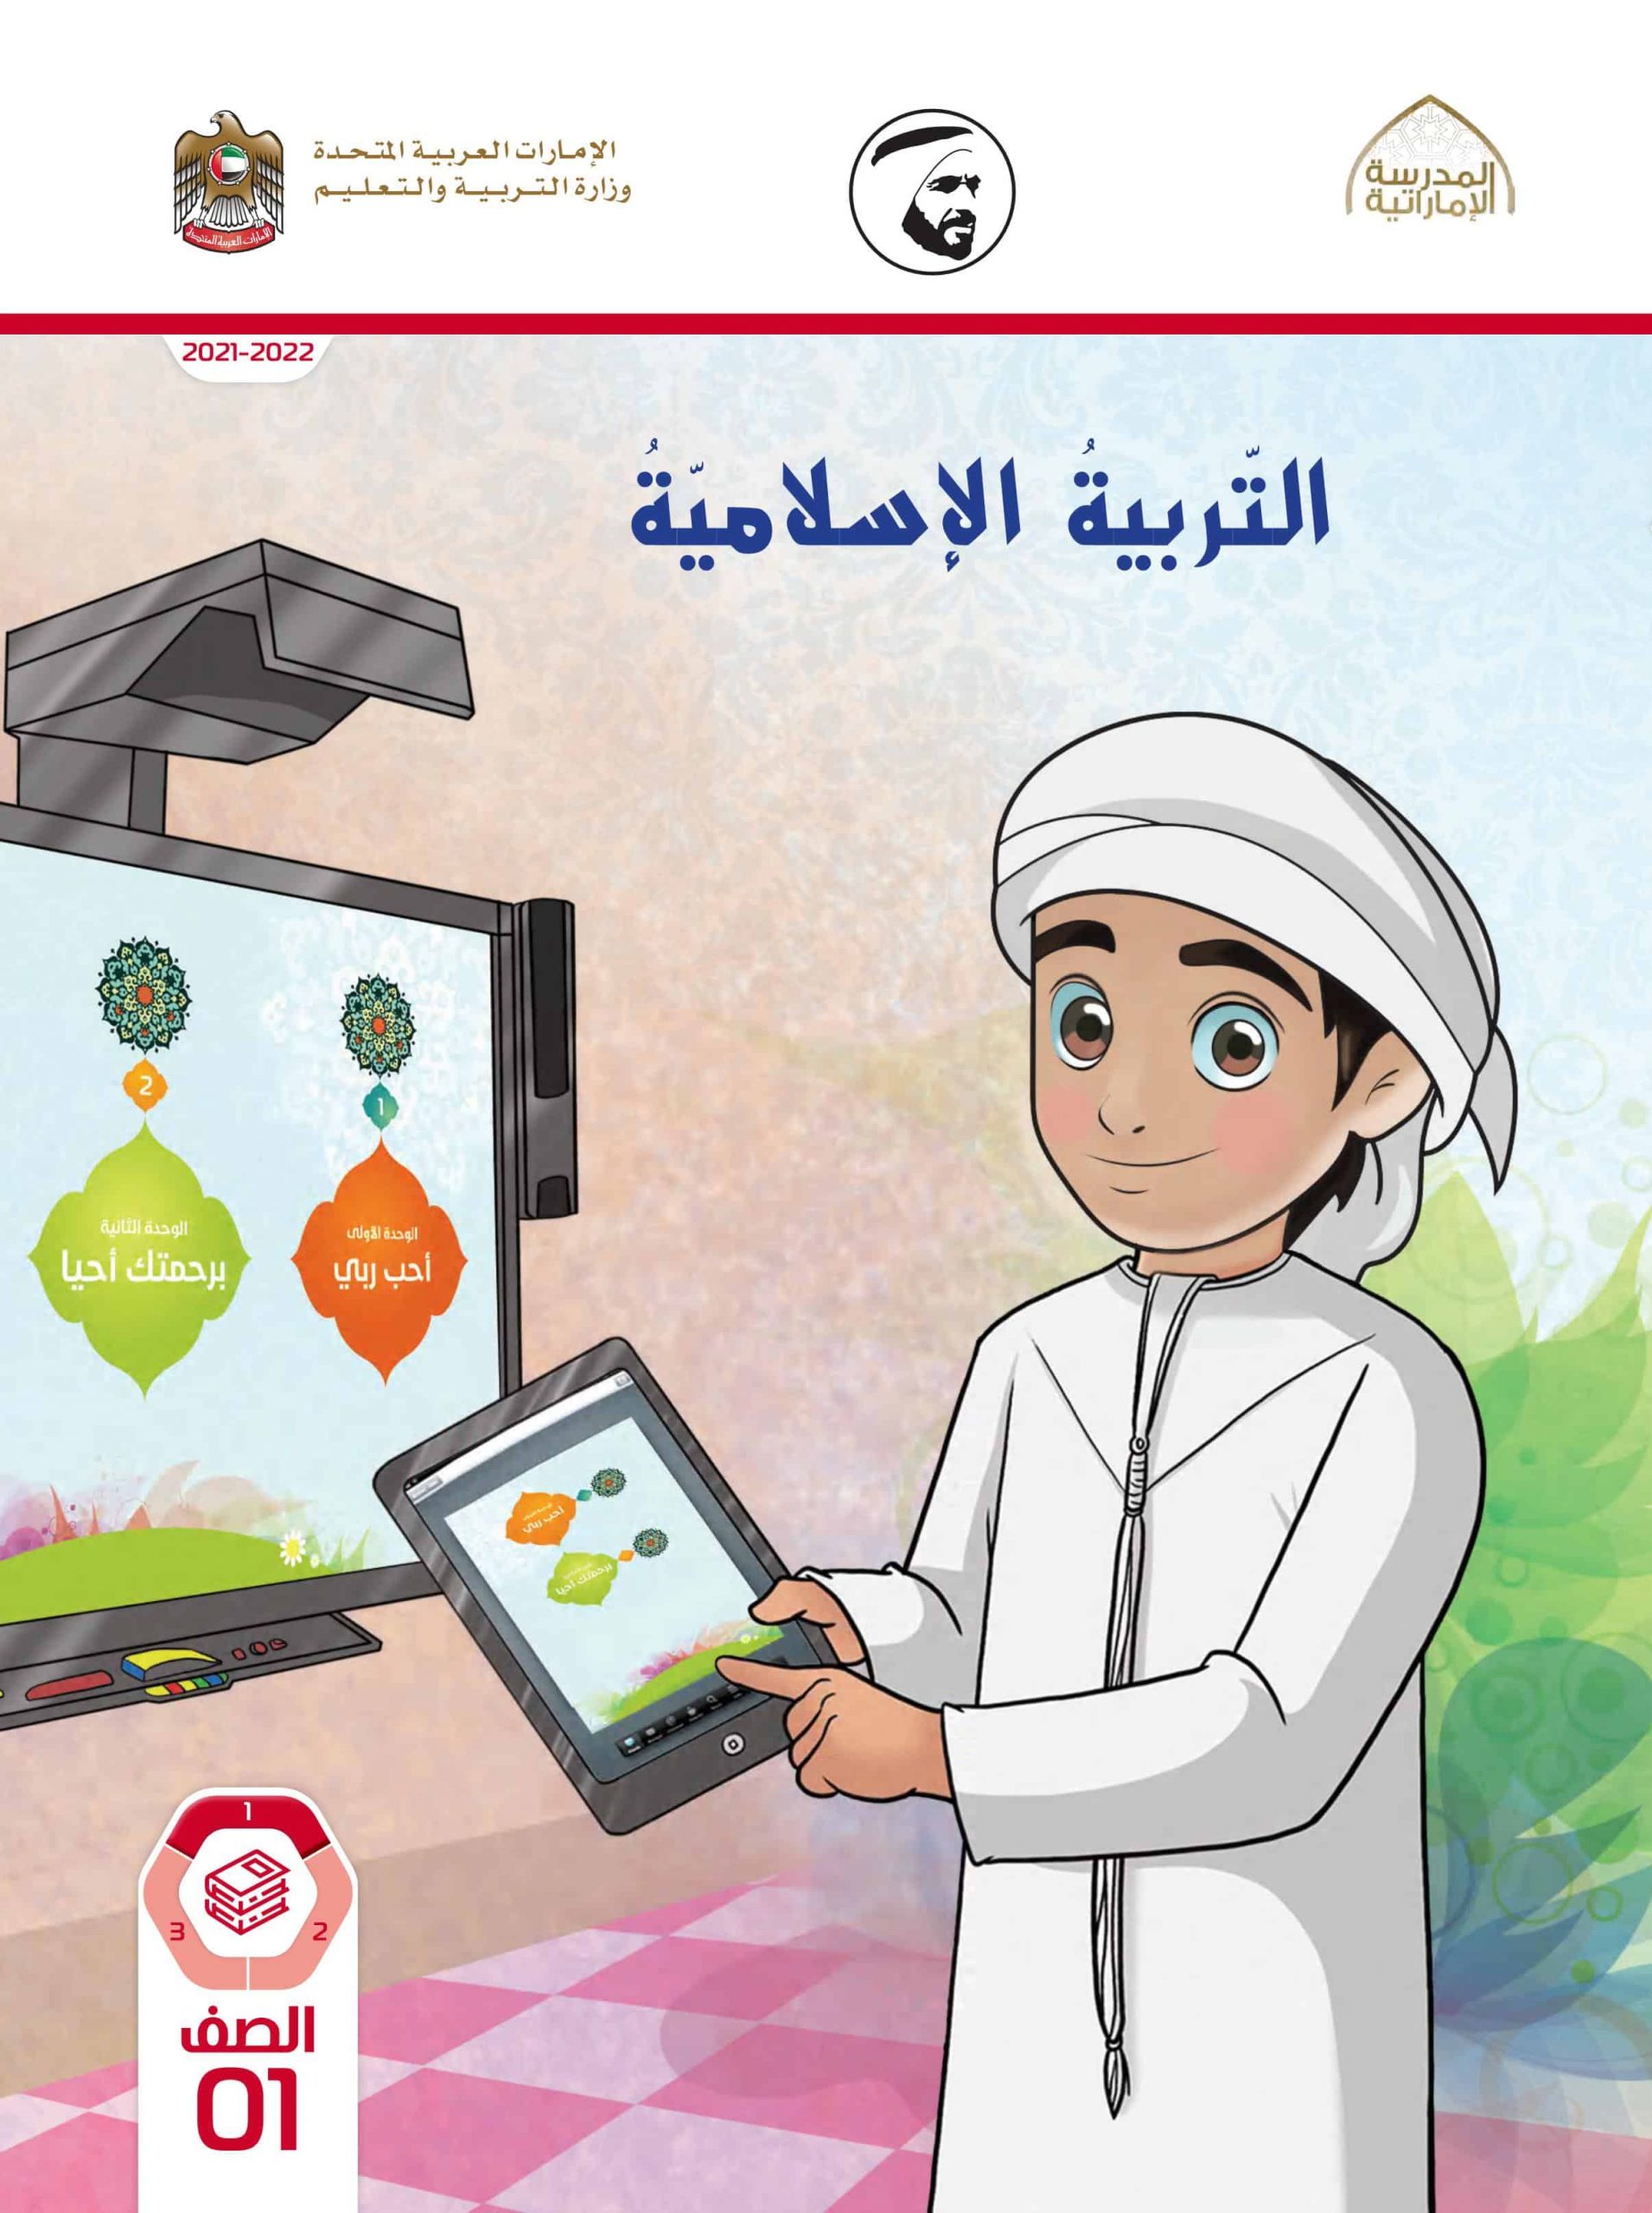 كتاب الطالب الفصل الدراسي الأول 2021-2022 الصف الأول مادة التربية الإسلامية